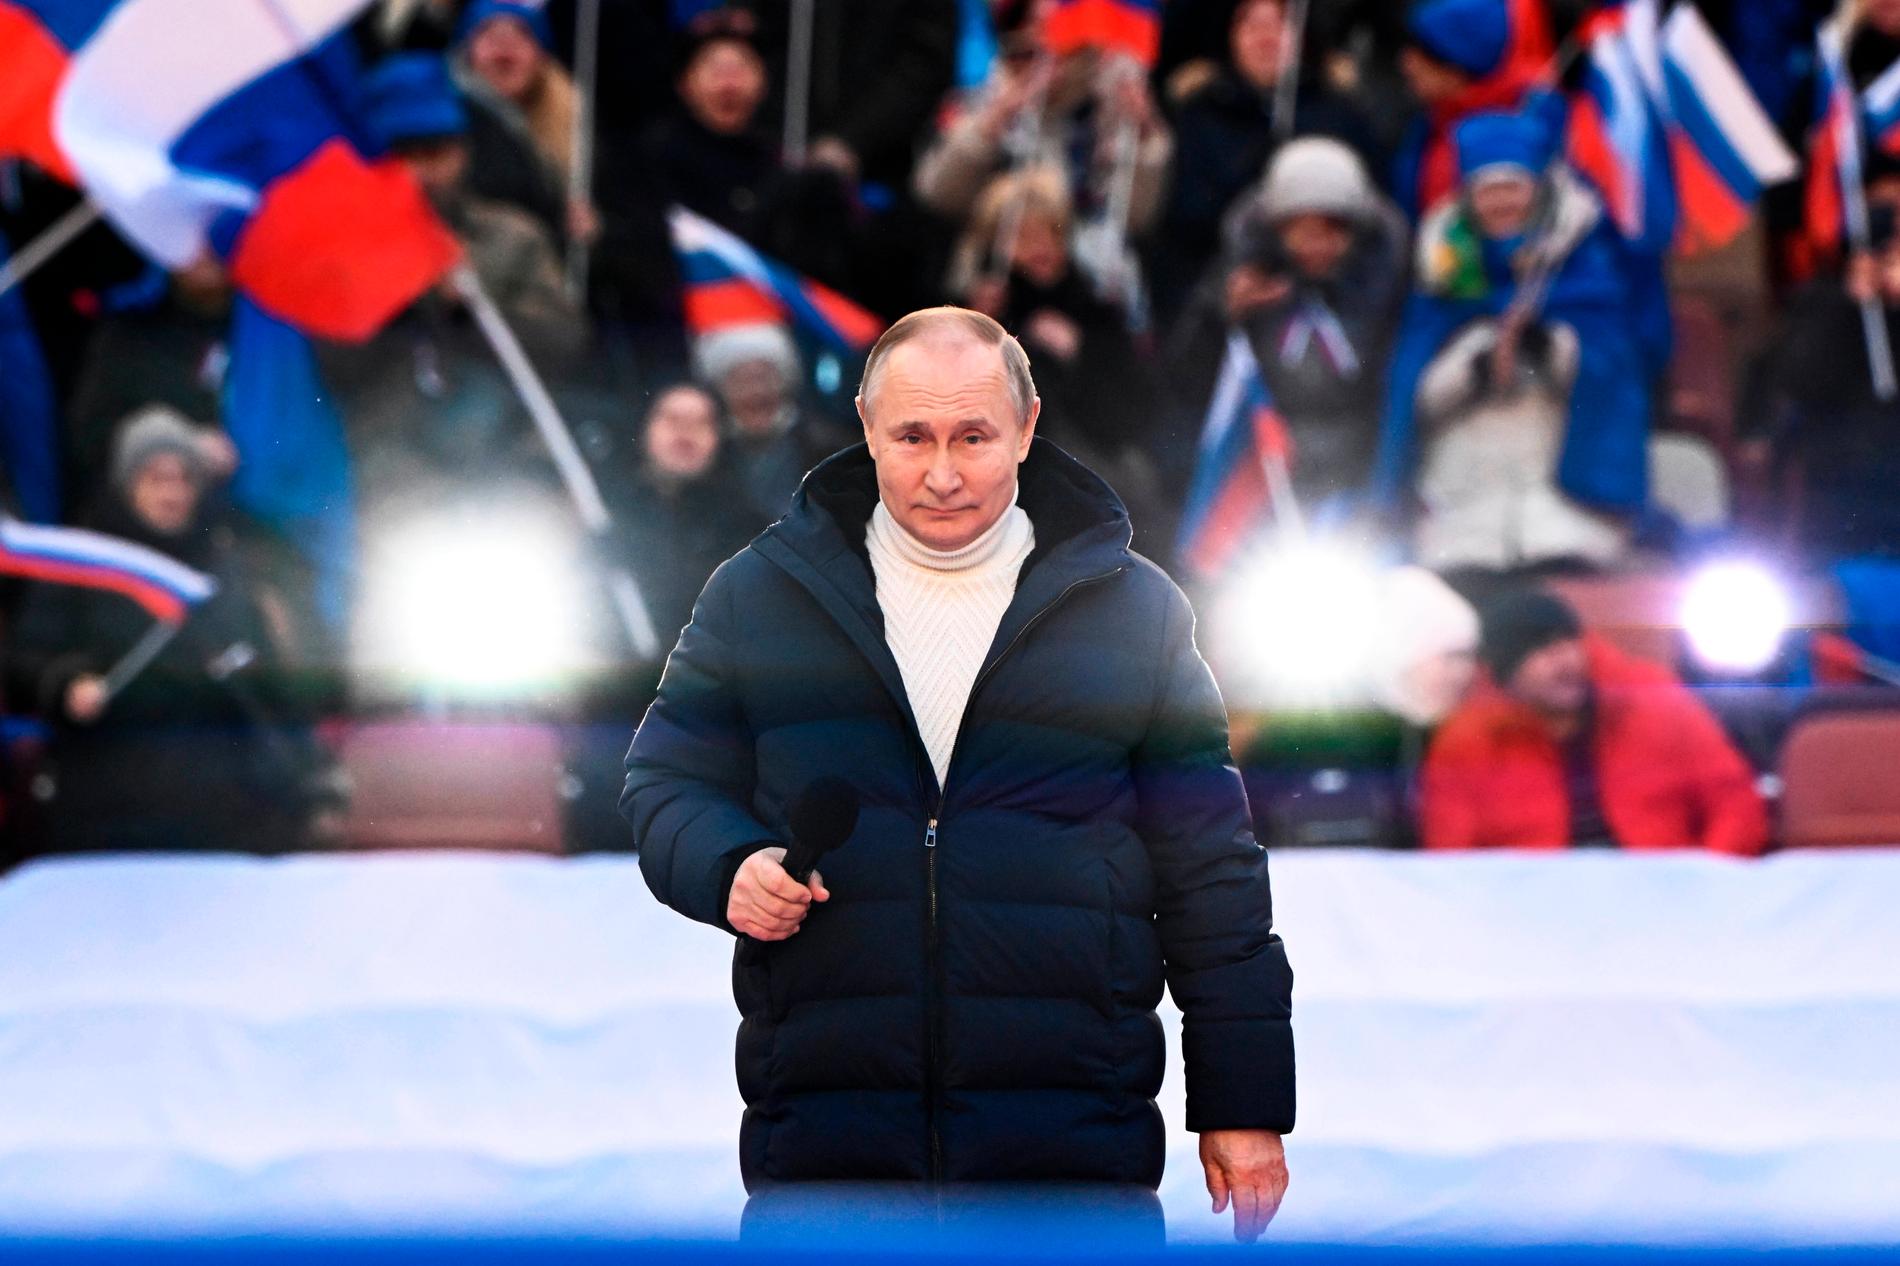 Dunjackan och den varma tröjan som Putin hade på sig under talet på fredagen kostar – bokstavligen – skjortan.